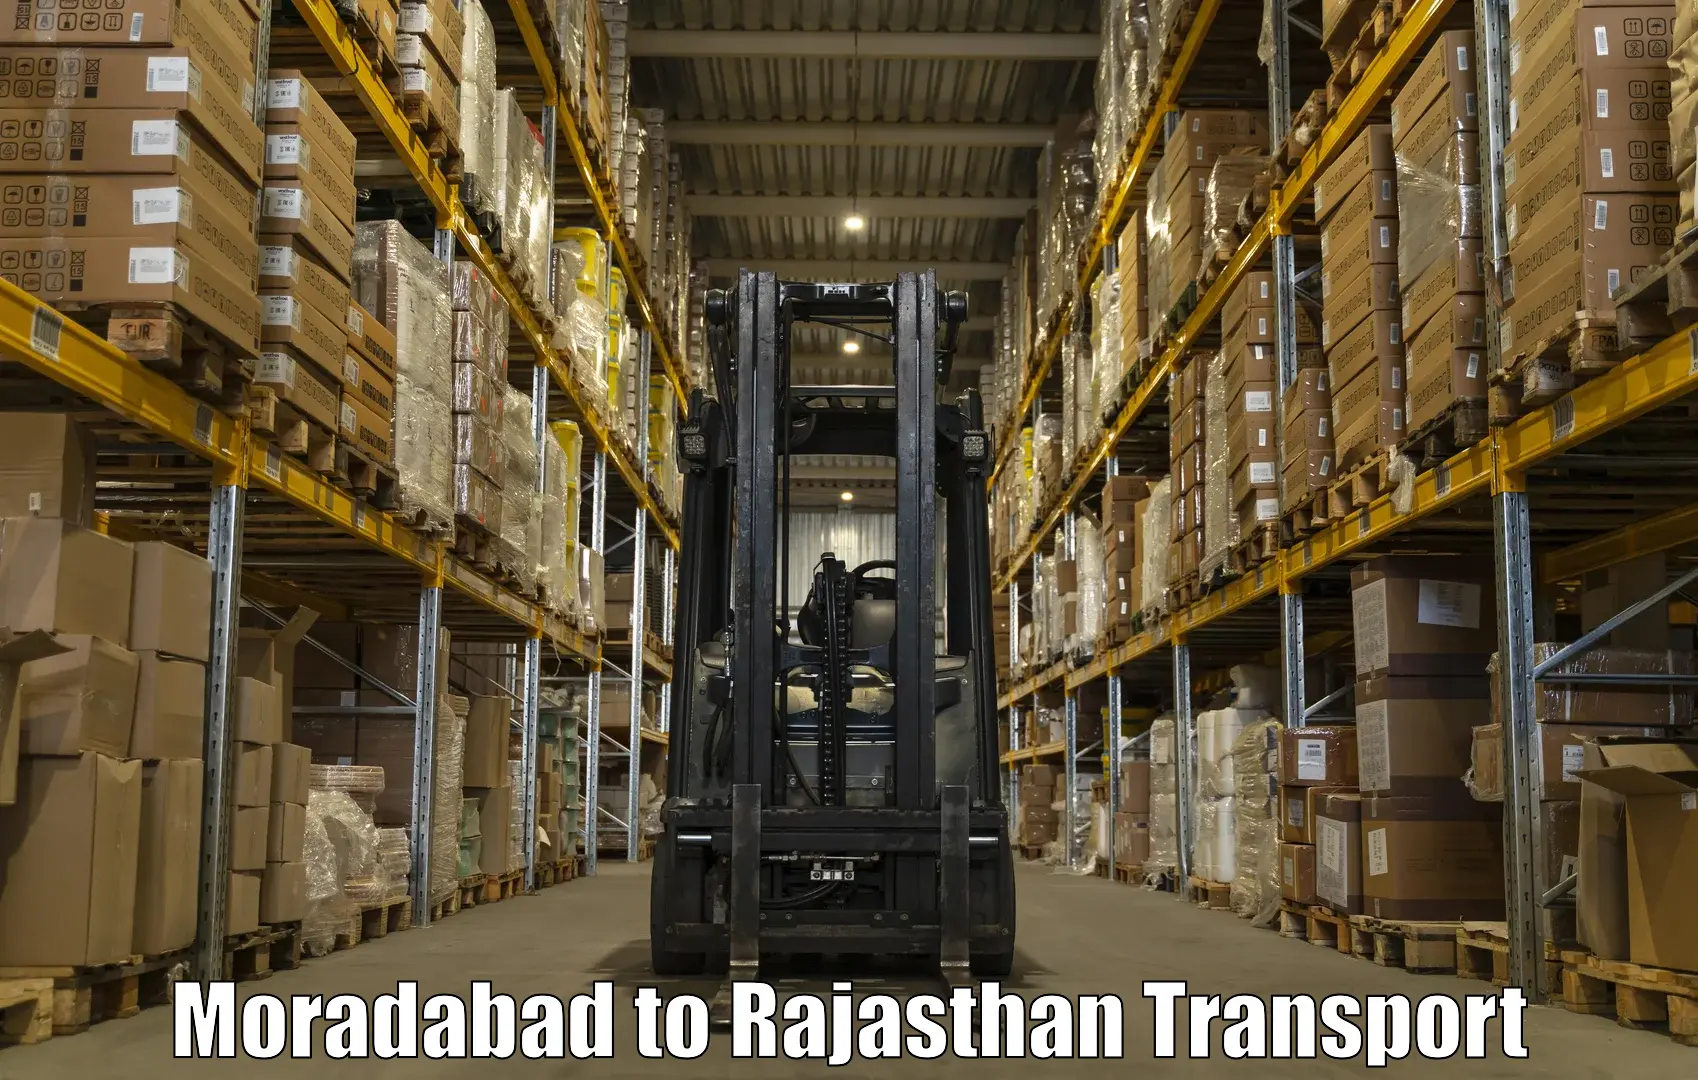 Online transport service Moradabad to Pratapgarh Rajasthan